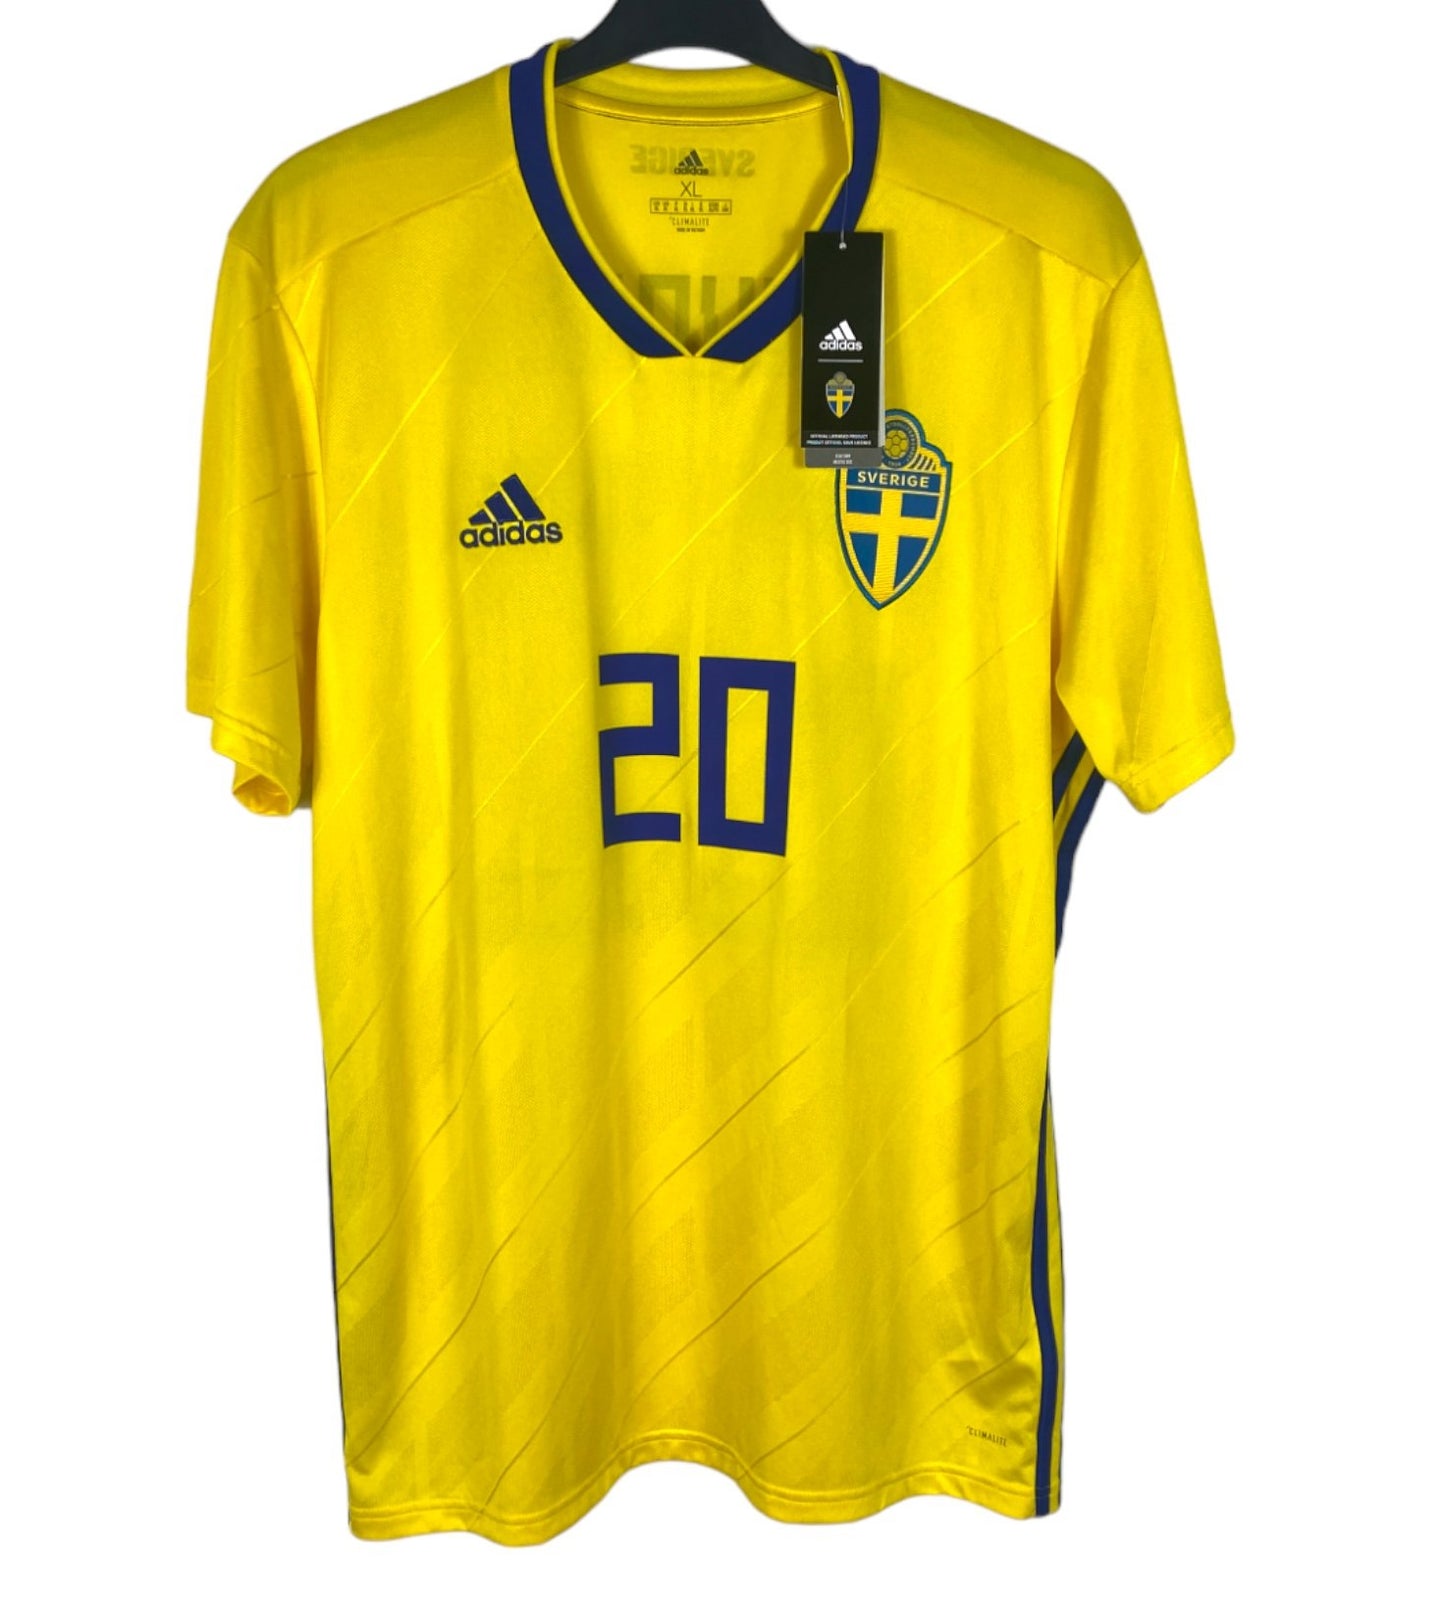 BNWT 2018 2019 Sweden Adidas Home Football Shirt TOIVONEN 20 Men's XL